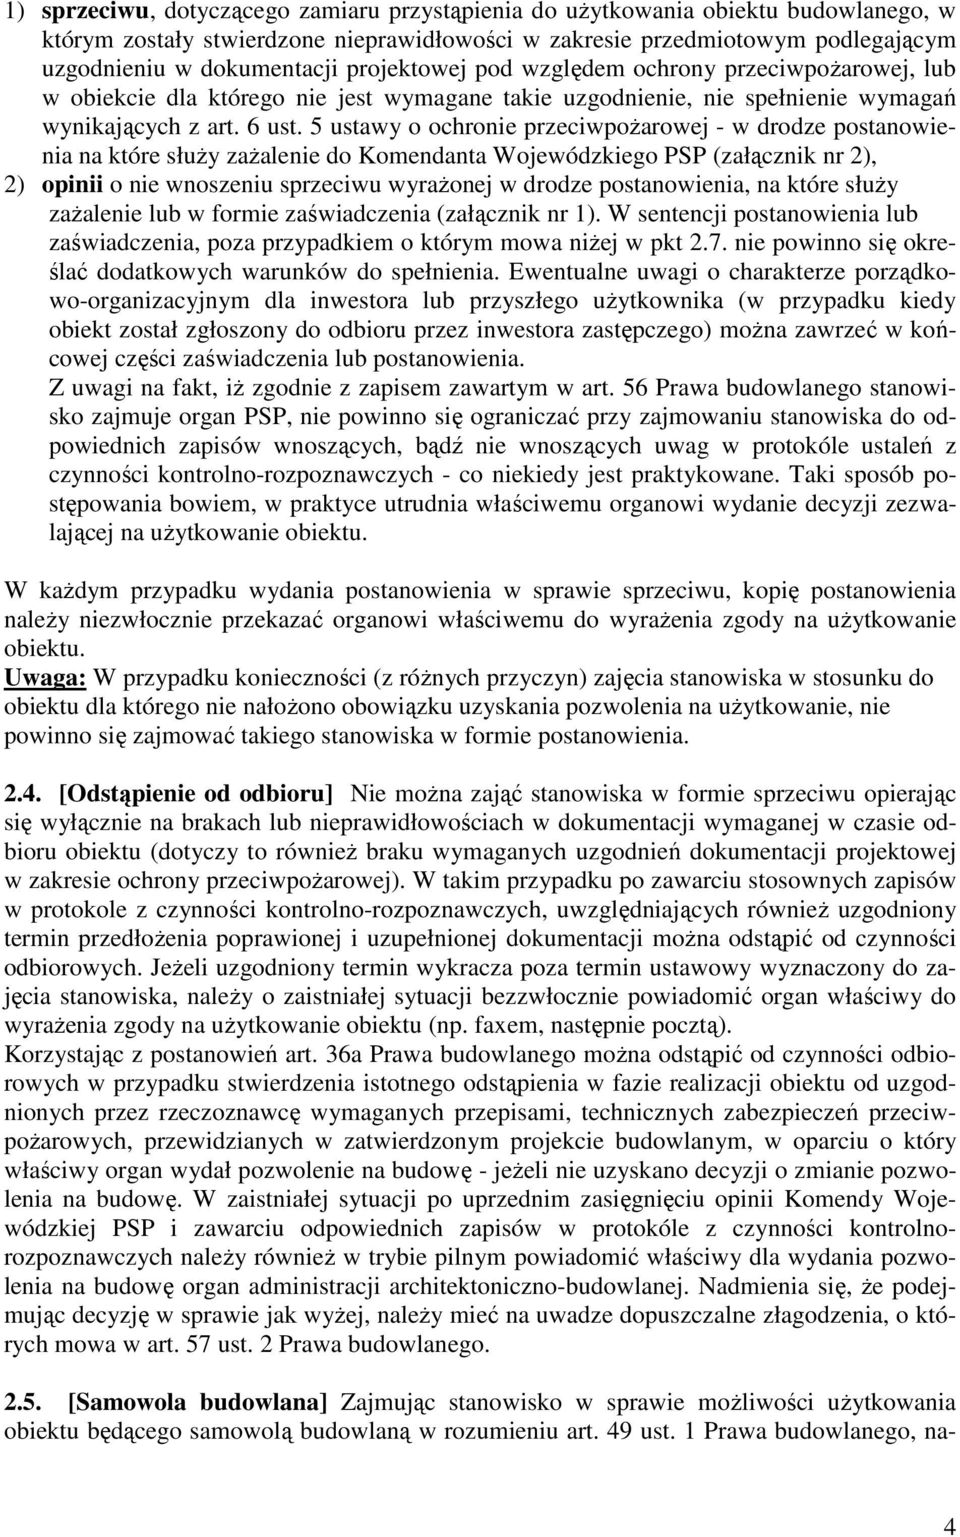 5 ustawy o ochronie przeciwpoŝarowej - w drodze postanowienia na które słuŝy zaŝalenie do Komendanta Wojewódzkiego PSP (załącznik nr 2), 2) opinii o nie wnoszeniu sprzeciwu wyraŝonej w drodze